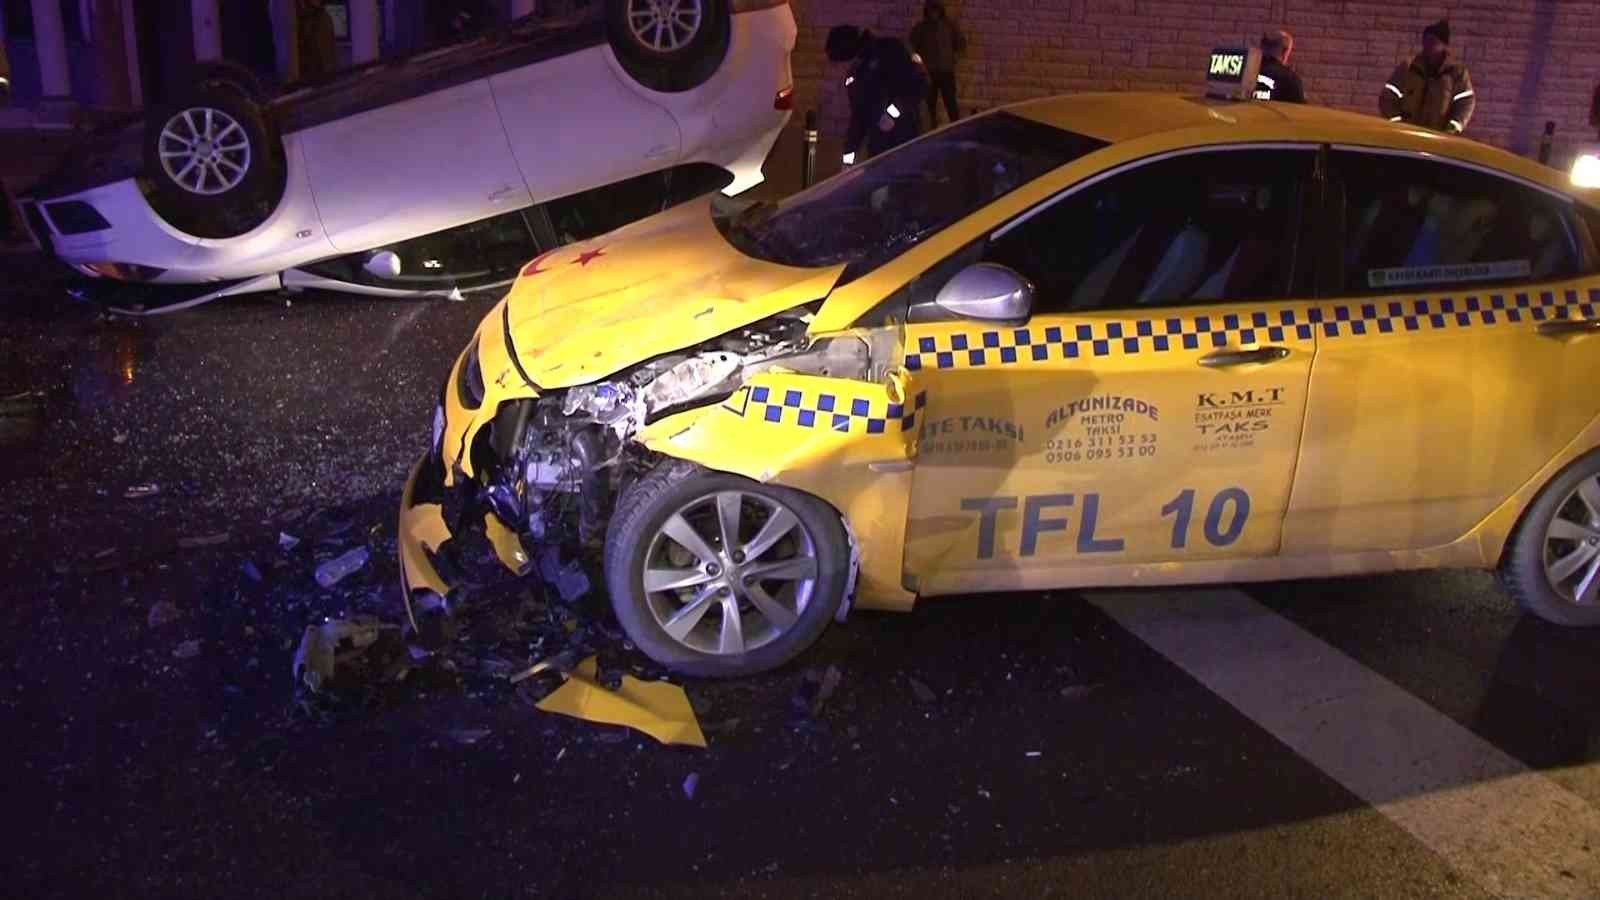 Üsküdar’da Kontrolünü Kaybeden Otomobil Takla Atarak Ticari Taksiye Çarptı: 1 Yaralı